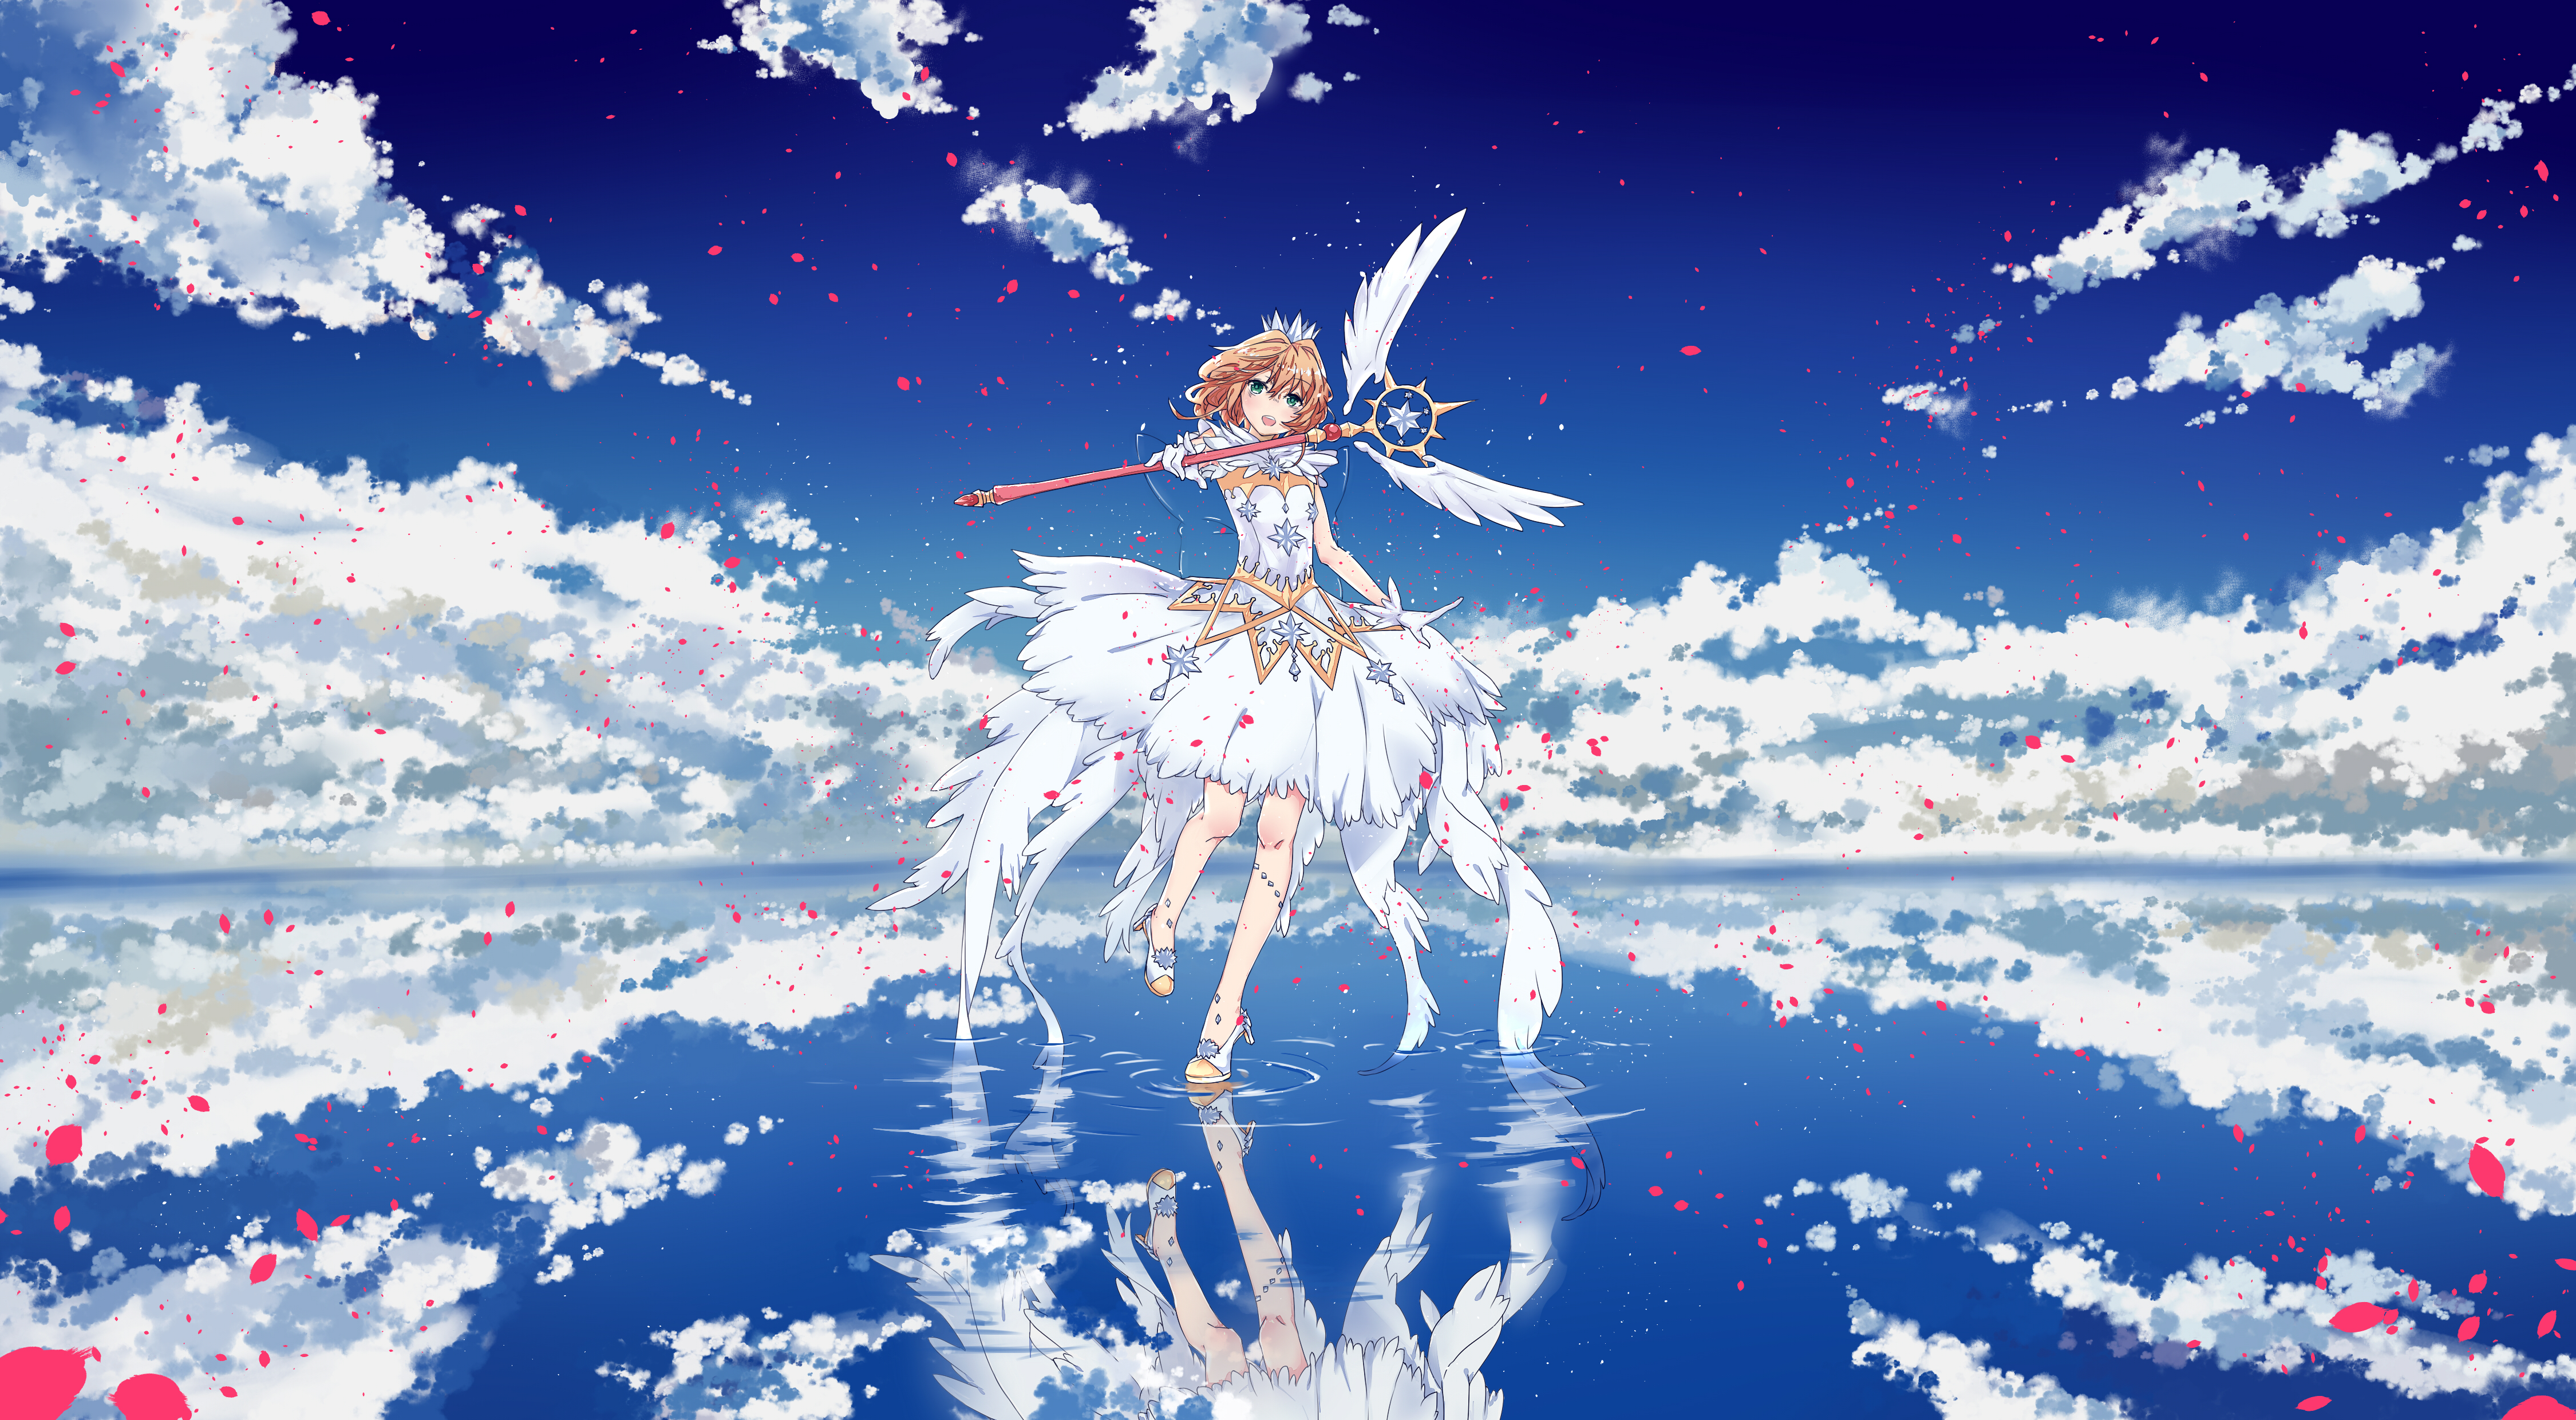 Anime Anime Girls JinYun Rex Kinomoto Sakura Clouds Mirrored Sky Petals Cardcaptor Sakura 4500x2480